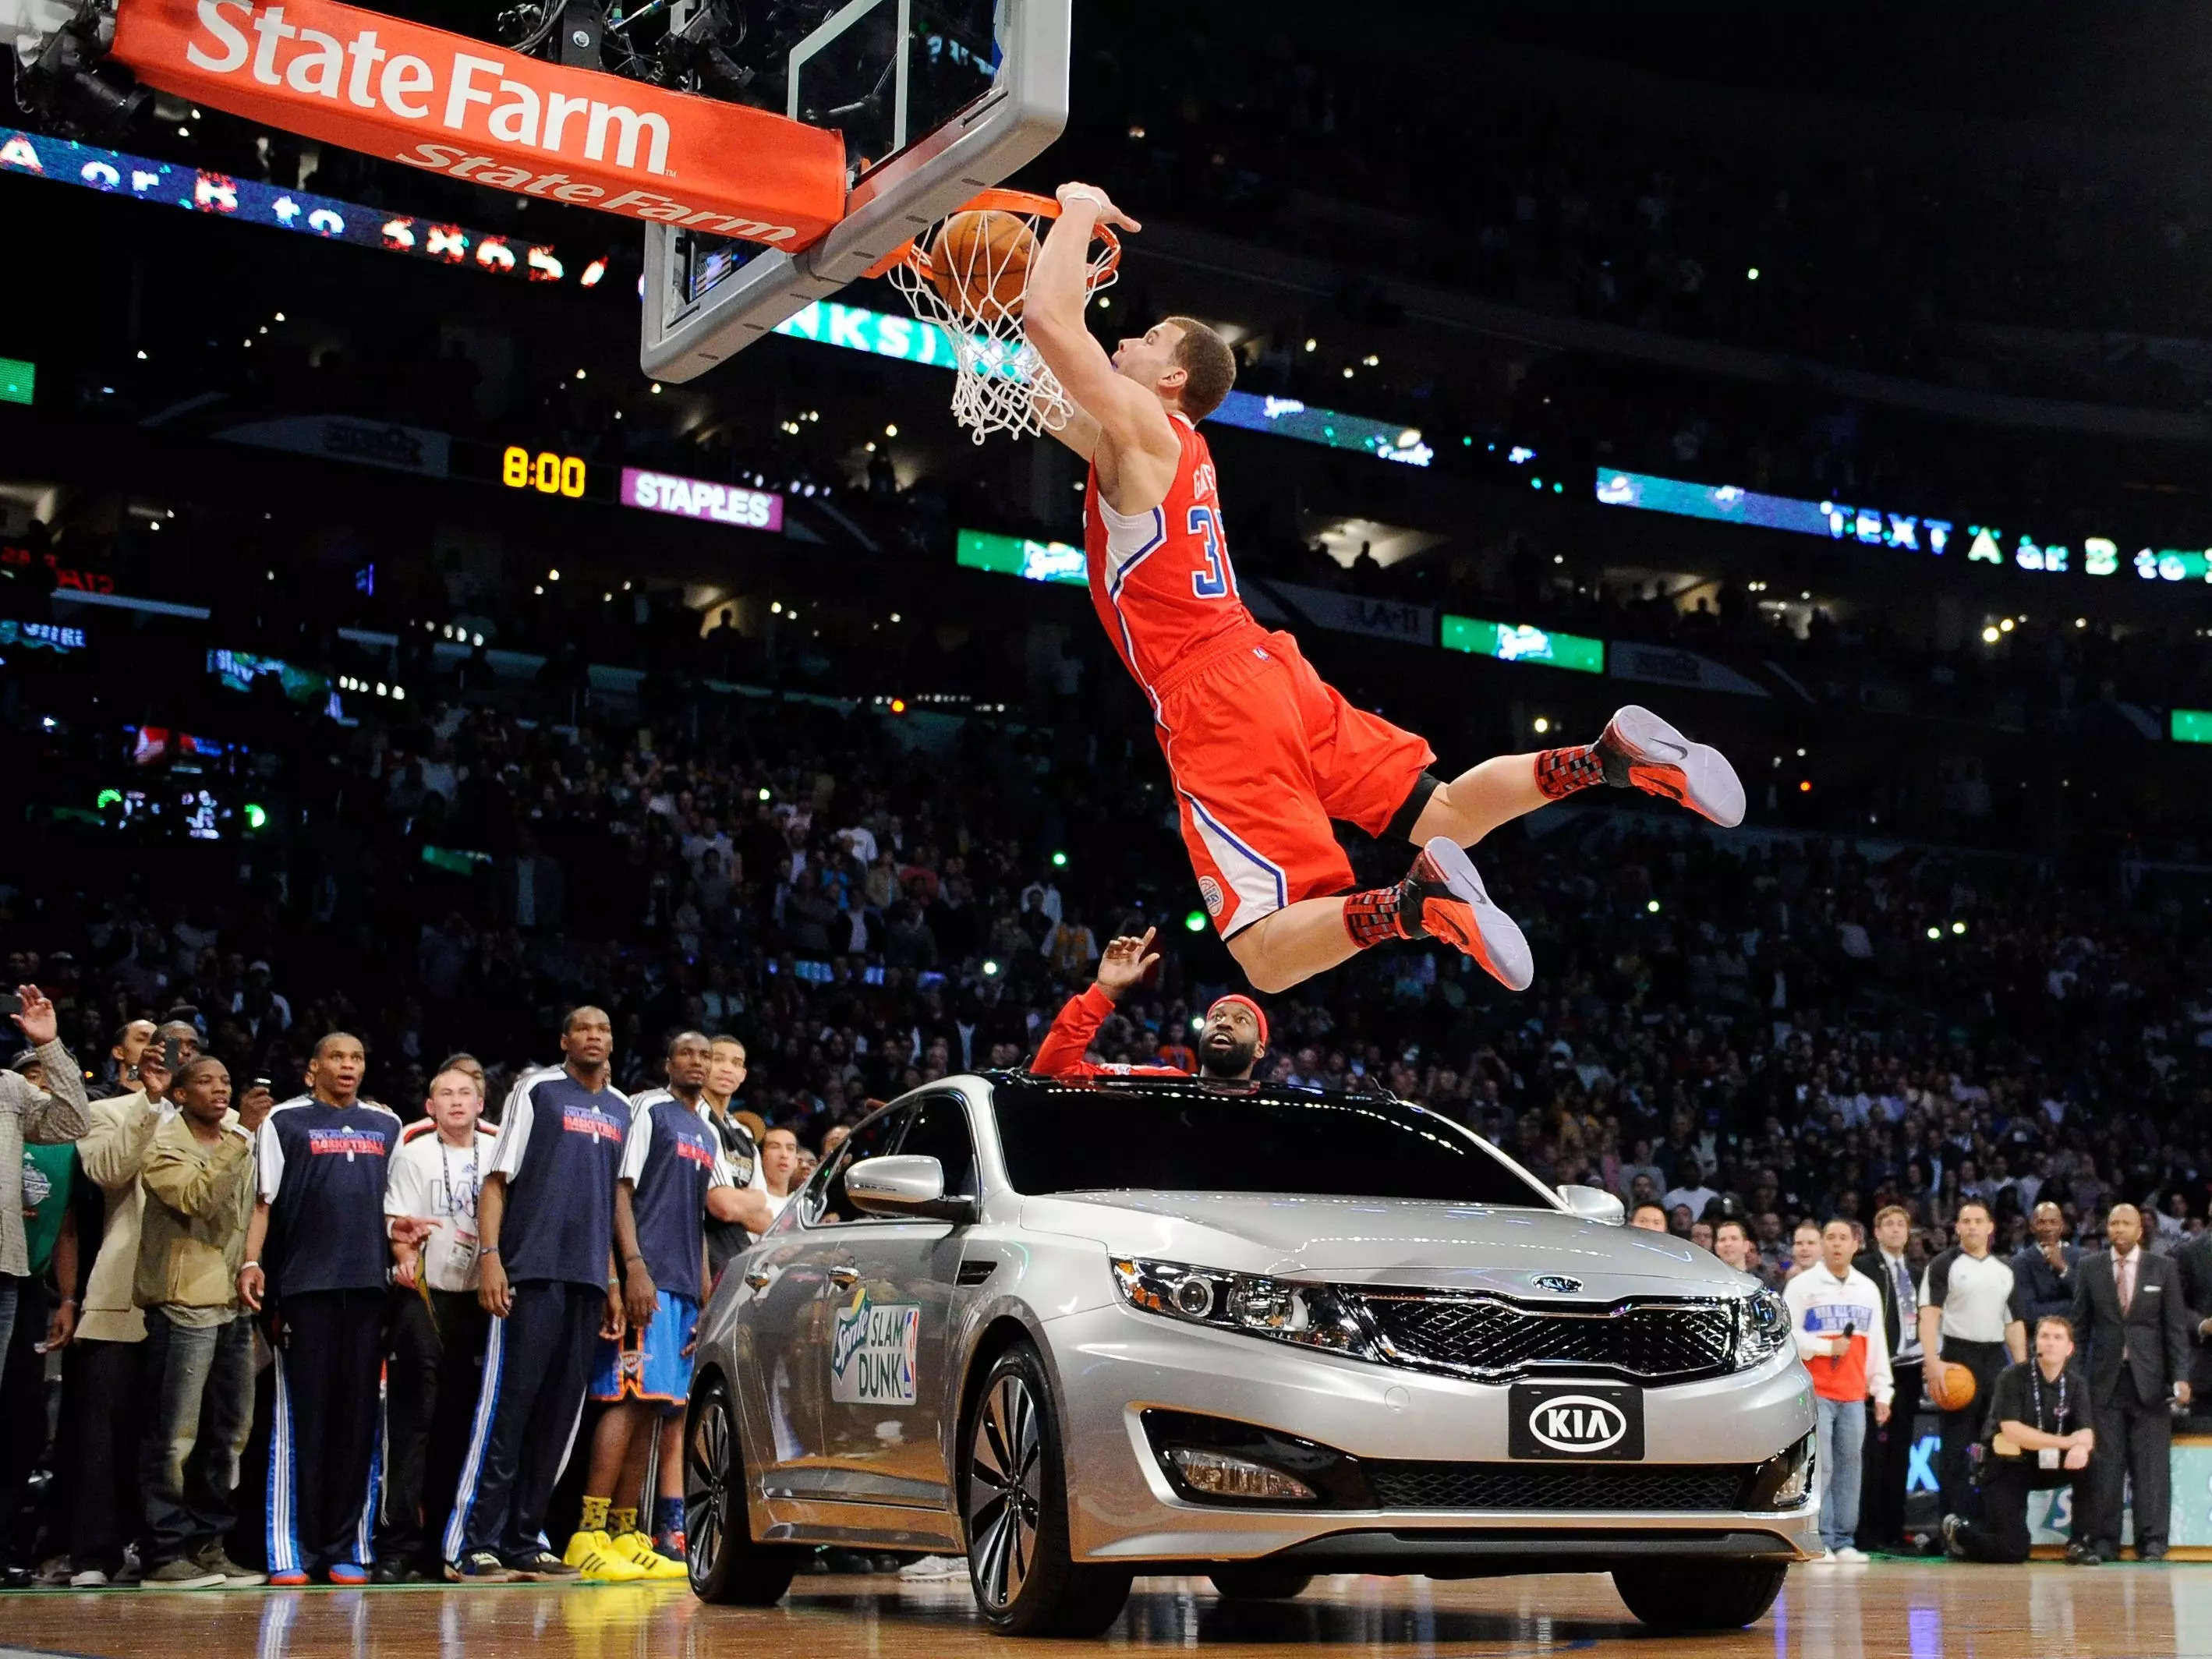 Blake Griffin dunk contest kia